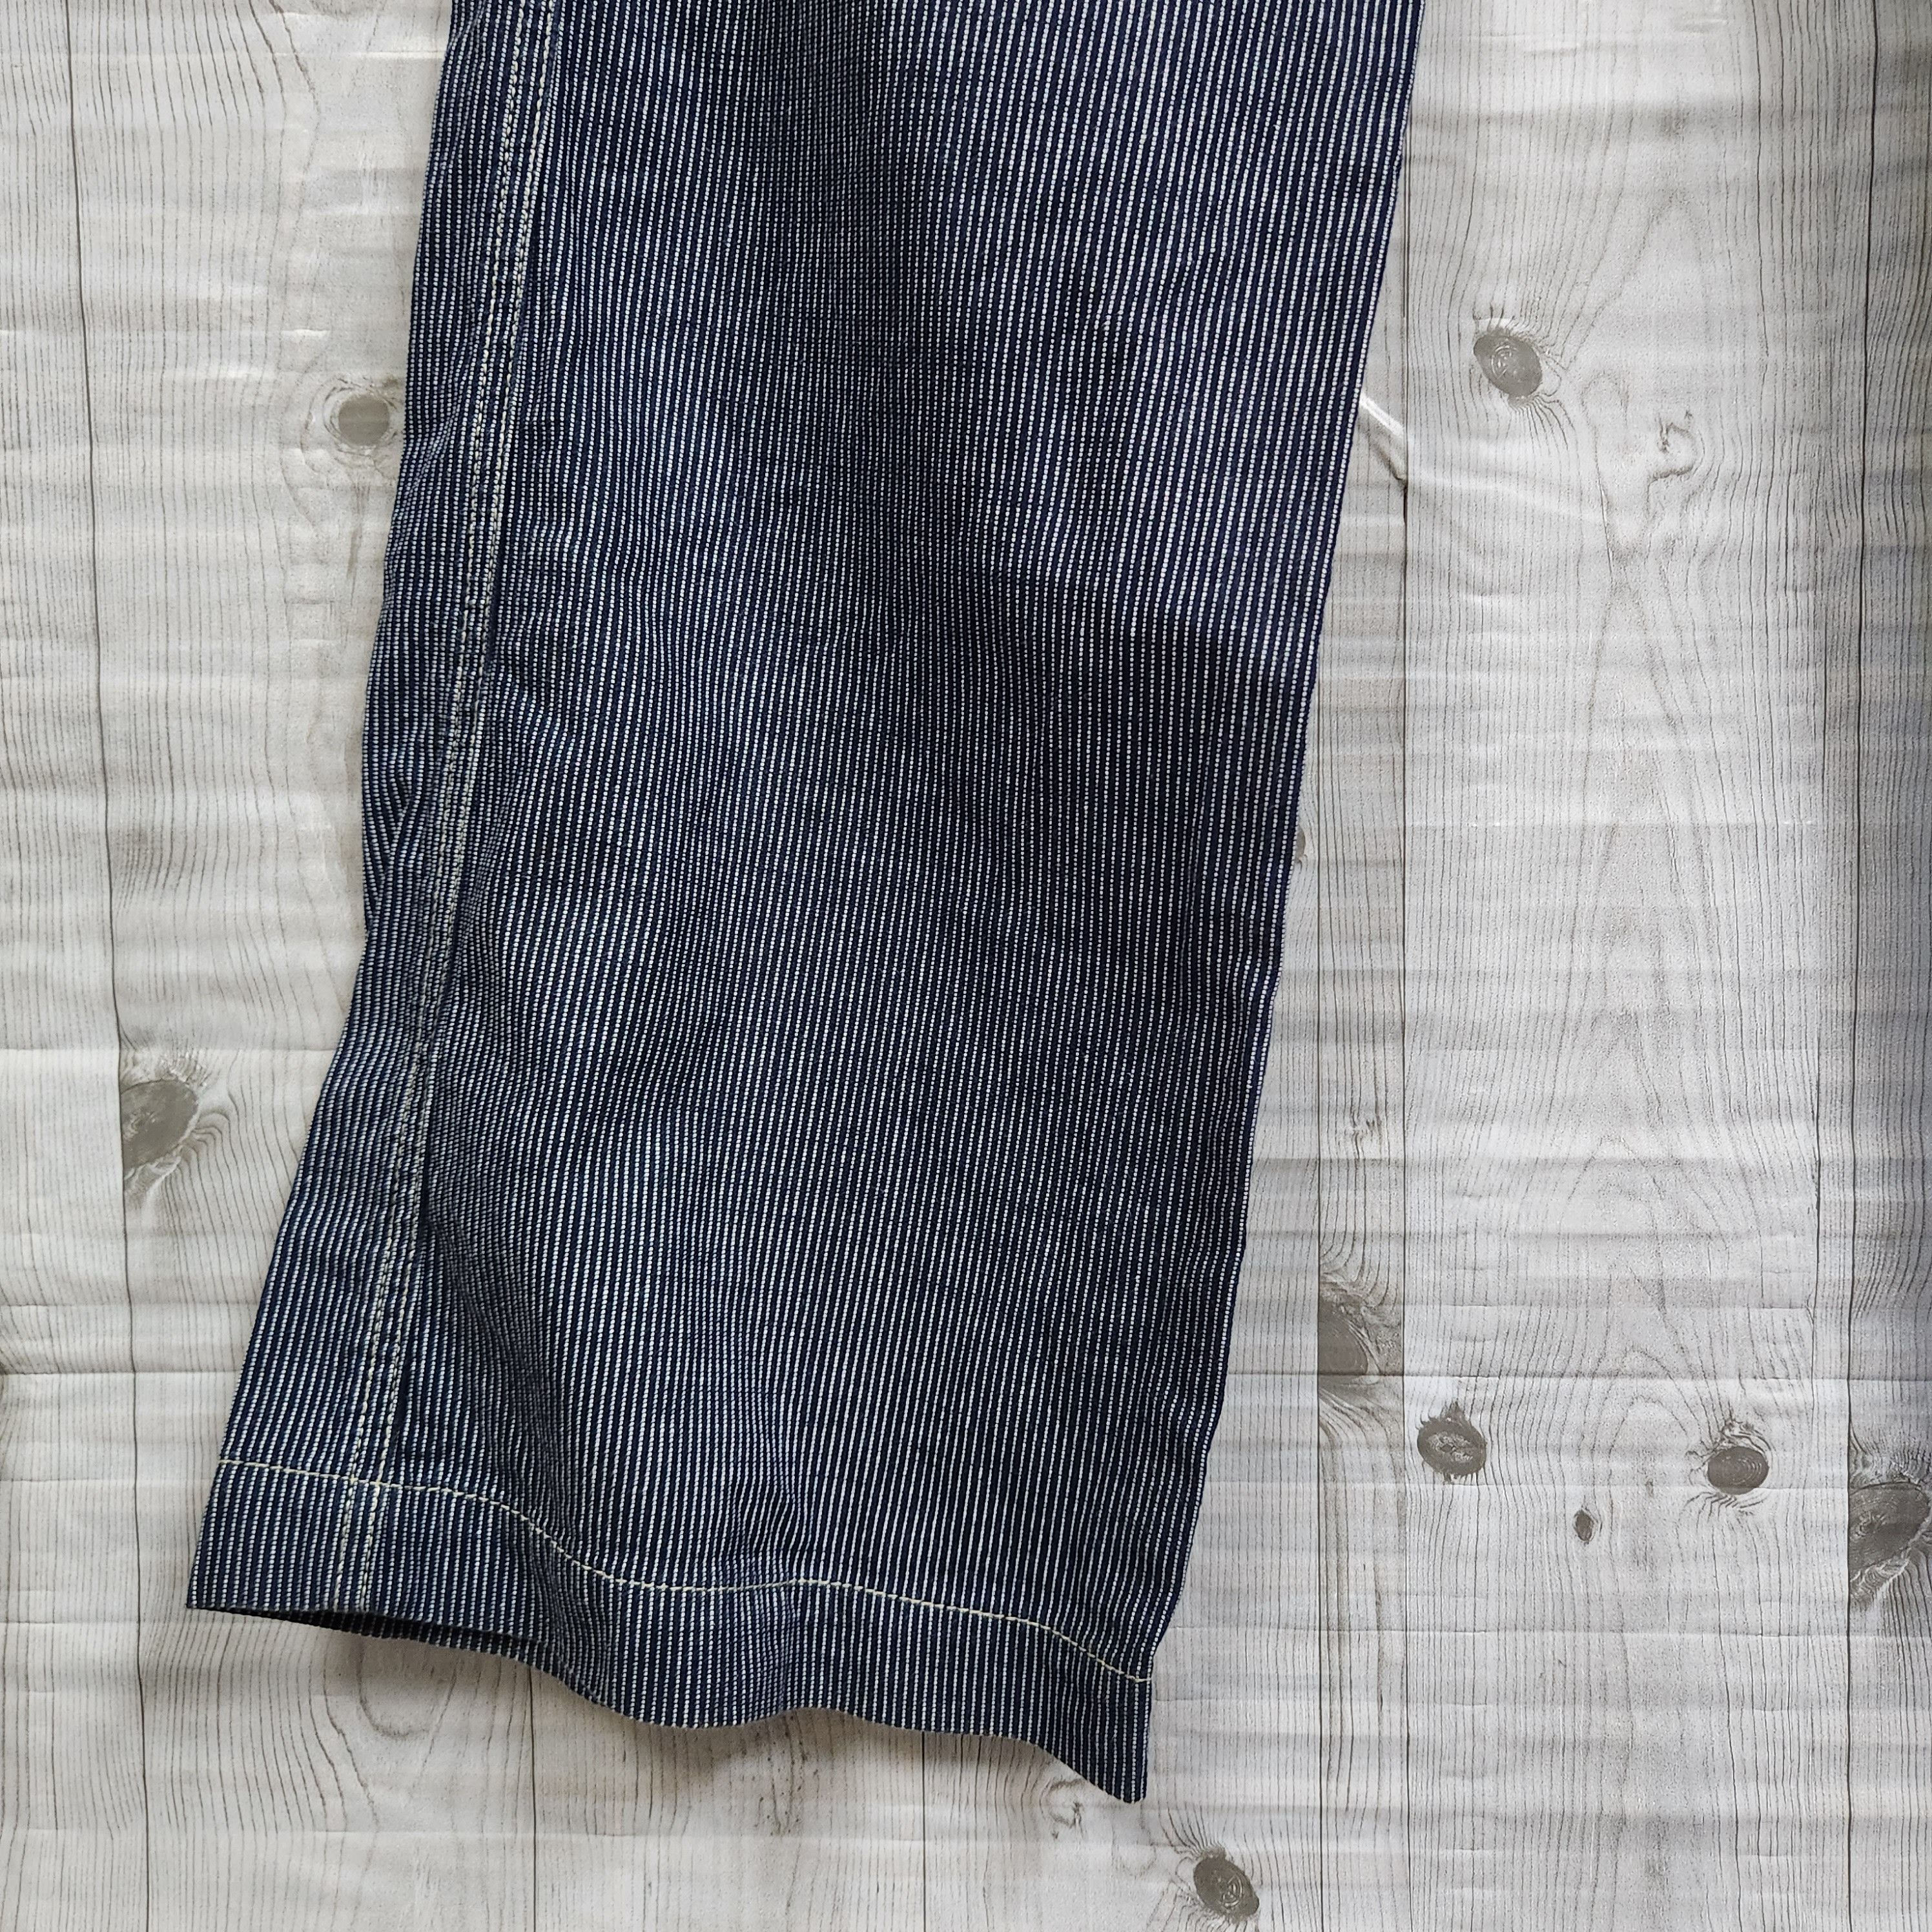 Japanese Brand - Flare ET Boite Flare Denim Jeans Japan - 15